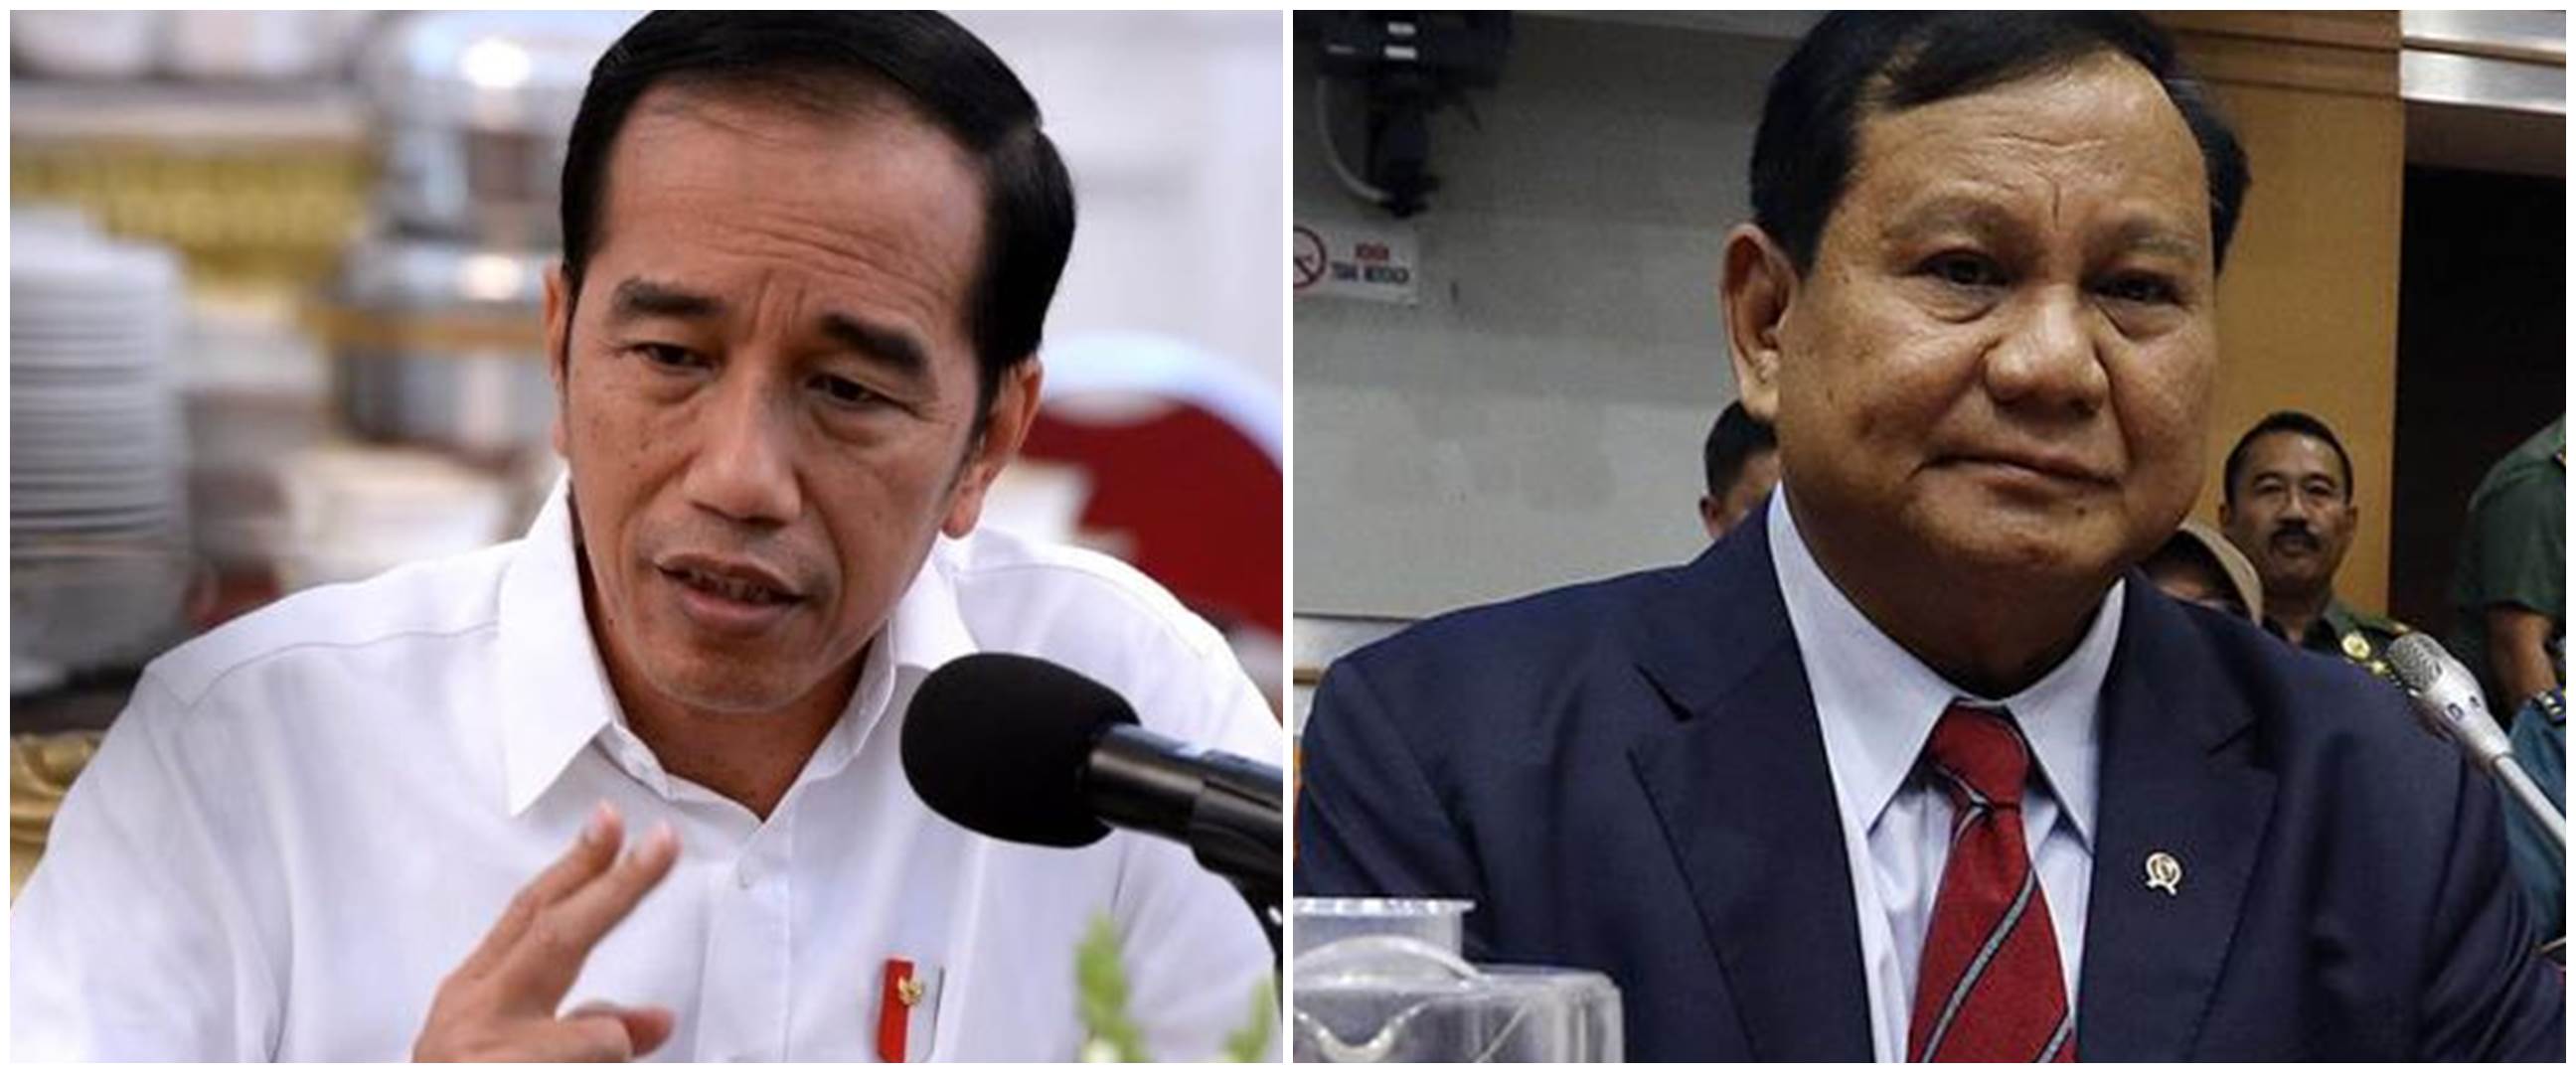 Respons 4 tokoh soal ledakan di Monas, Prabowo: Jangan tanya saya